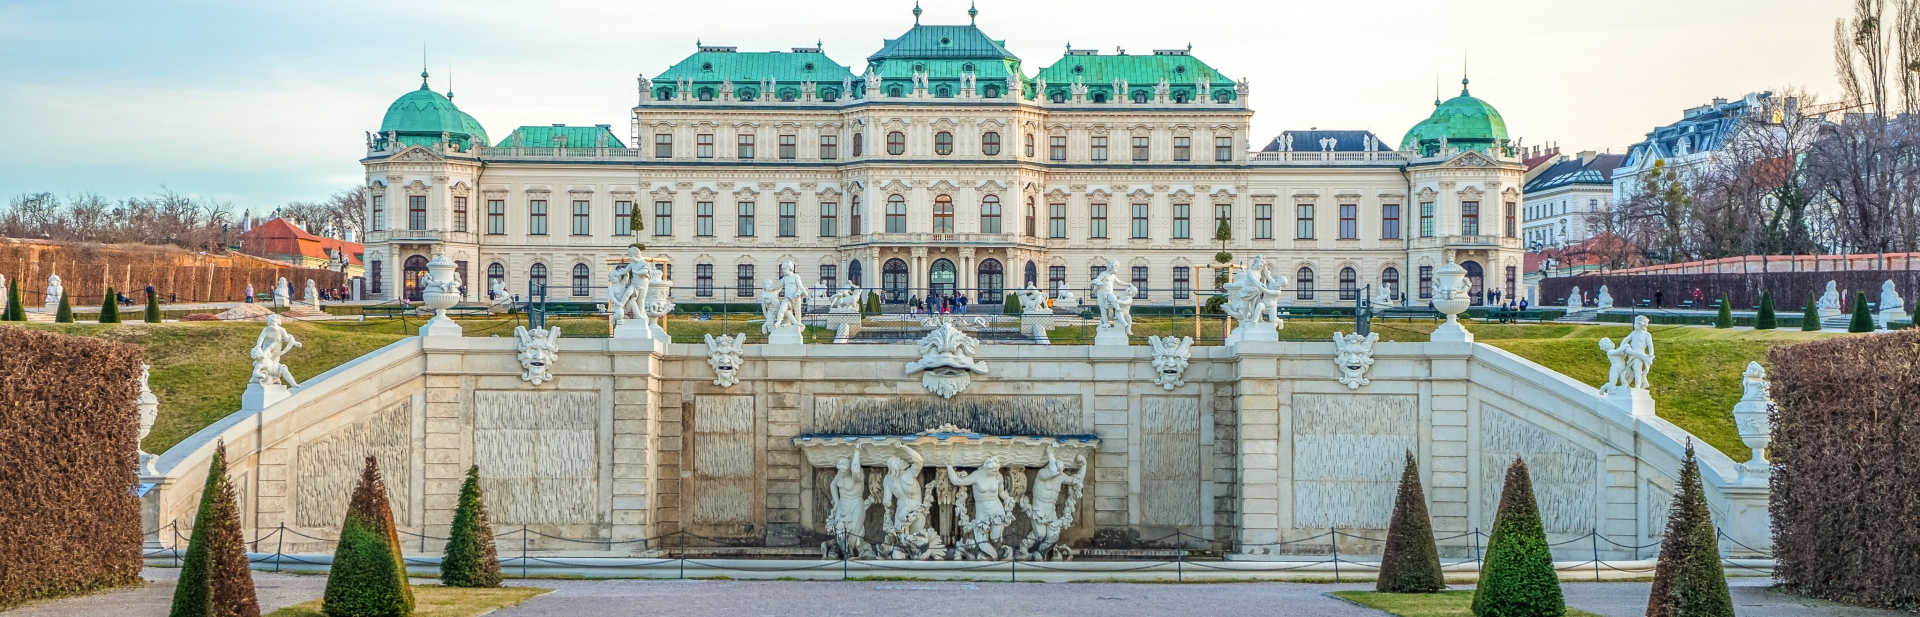 Wenen is een schitterende stad met volop vermaak voor kinderen. Op deze foto zie je het paleis Belvedere, een prachtig gezicht.